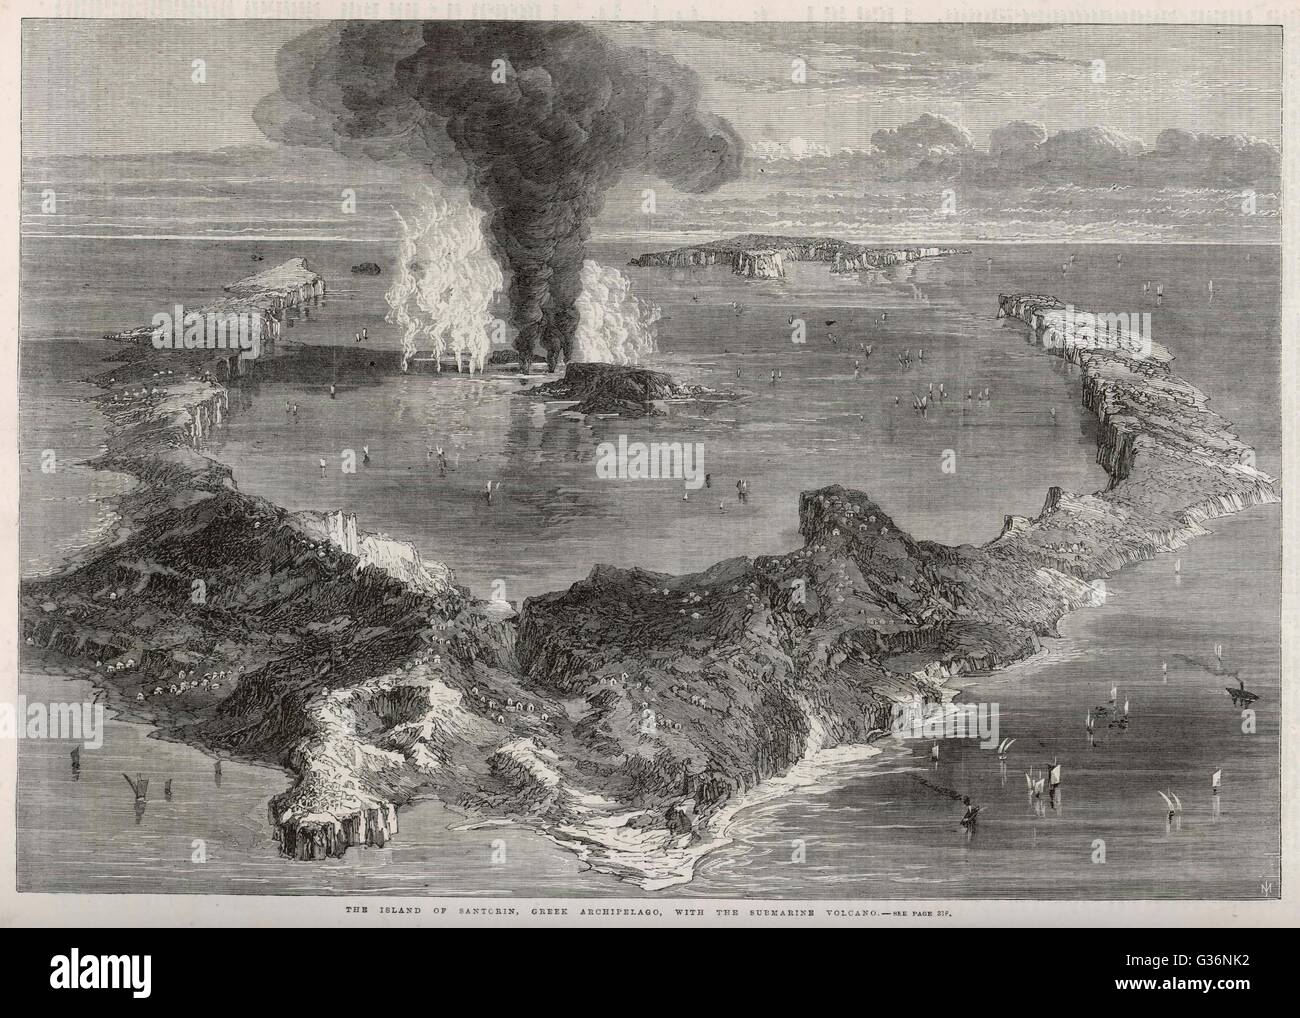 Einen ausbrechenden Vulkan auf der griechischen Insel Santorini (Thira, Thira), durch einiges, die Lage von Atlantis zu sein gedacht.        Datum: 1866 Stockfoto